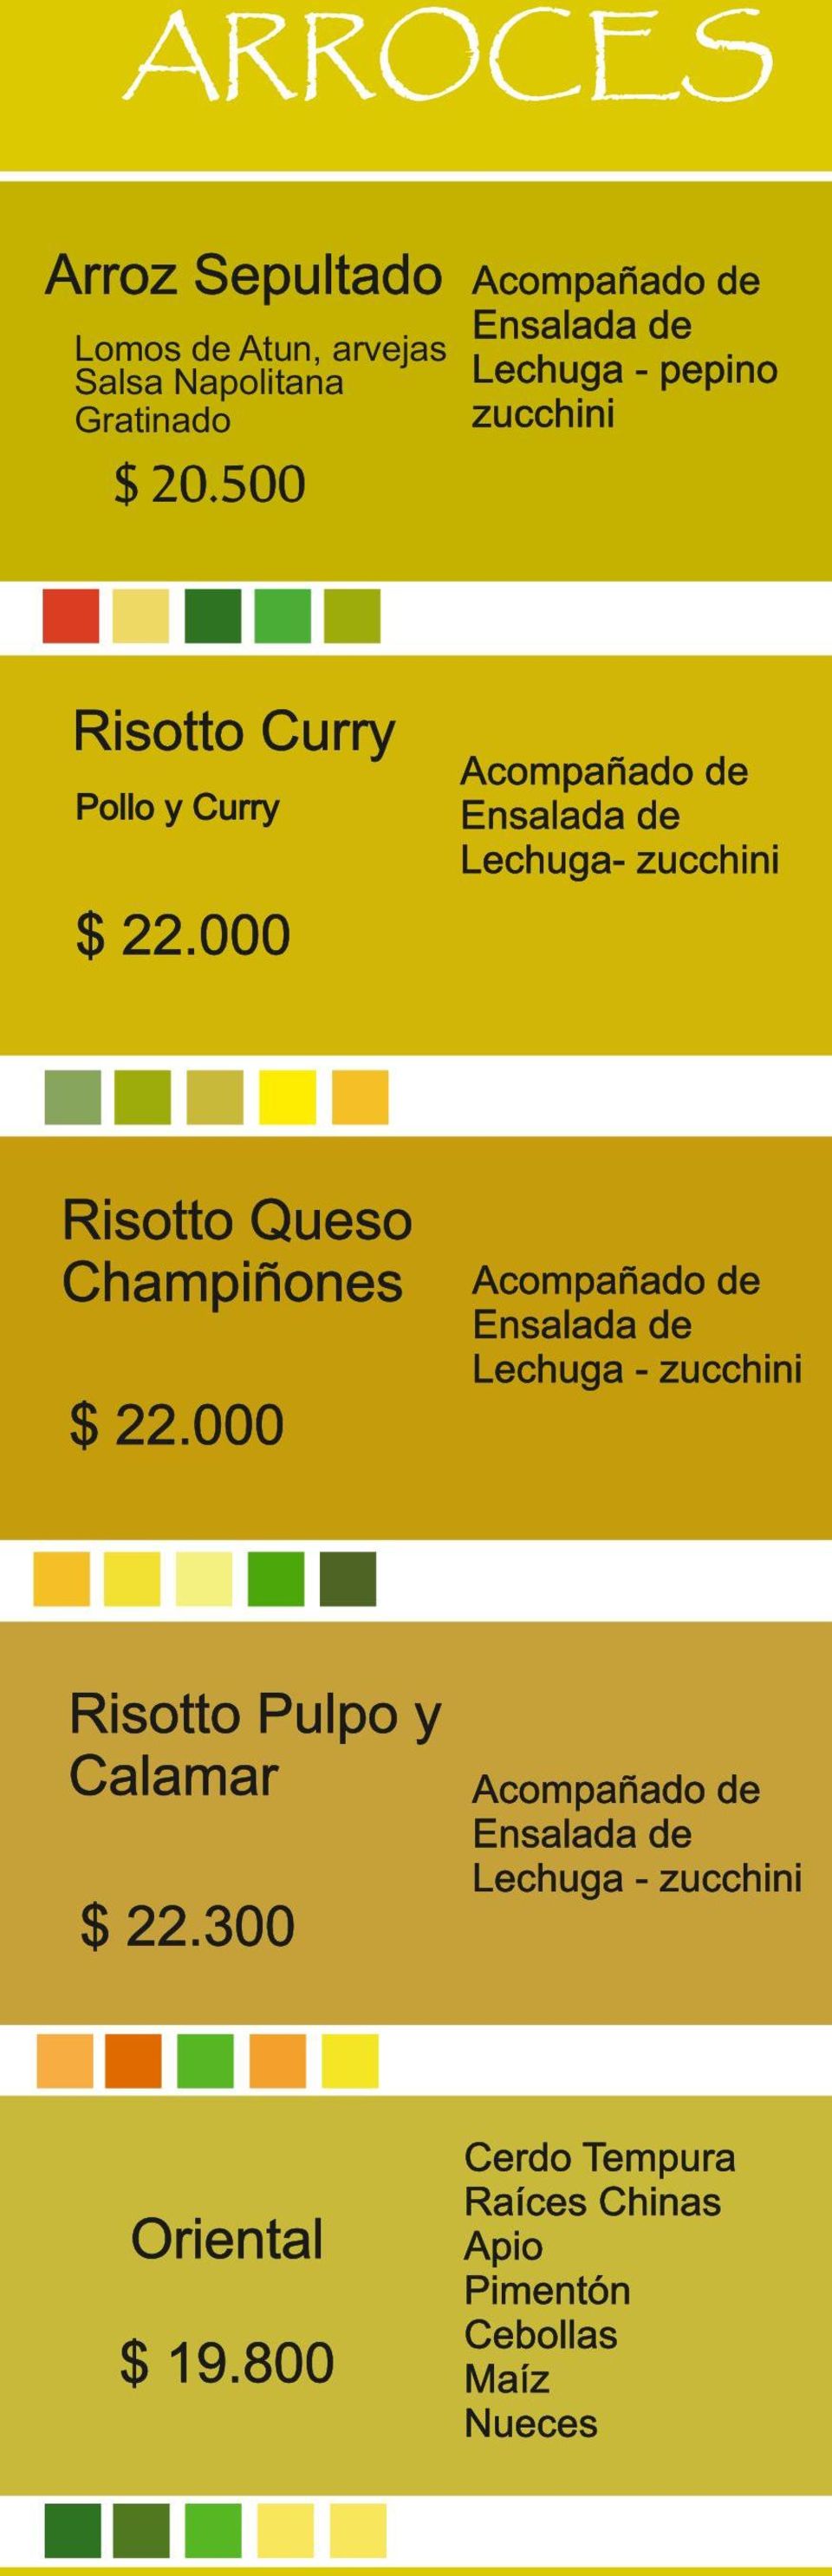 000 Risotto Queso Champiñones Lechuga - zucchini $ 22.